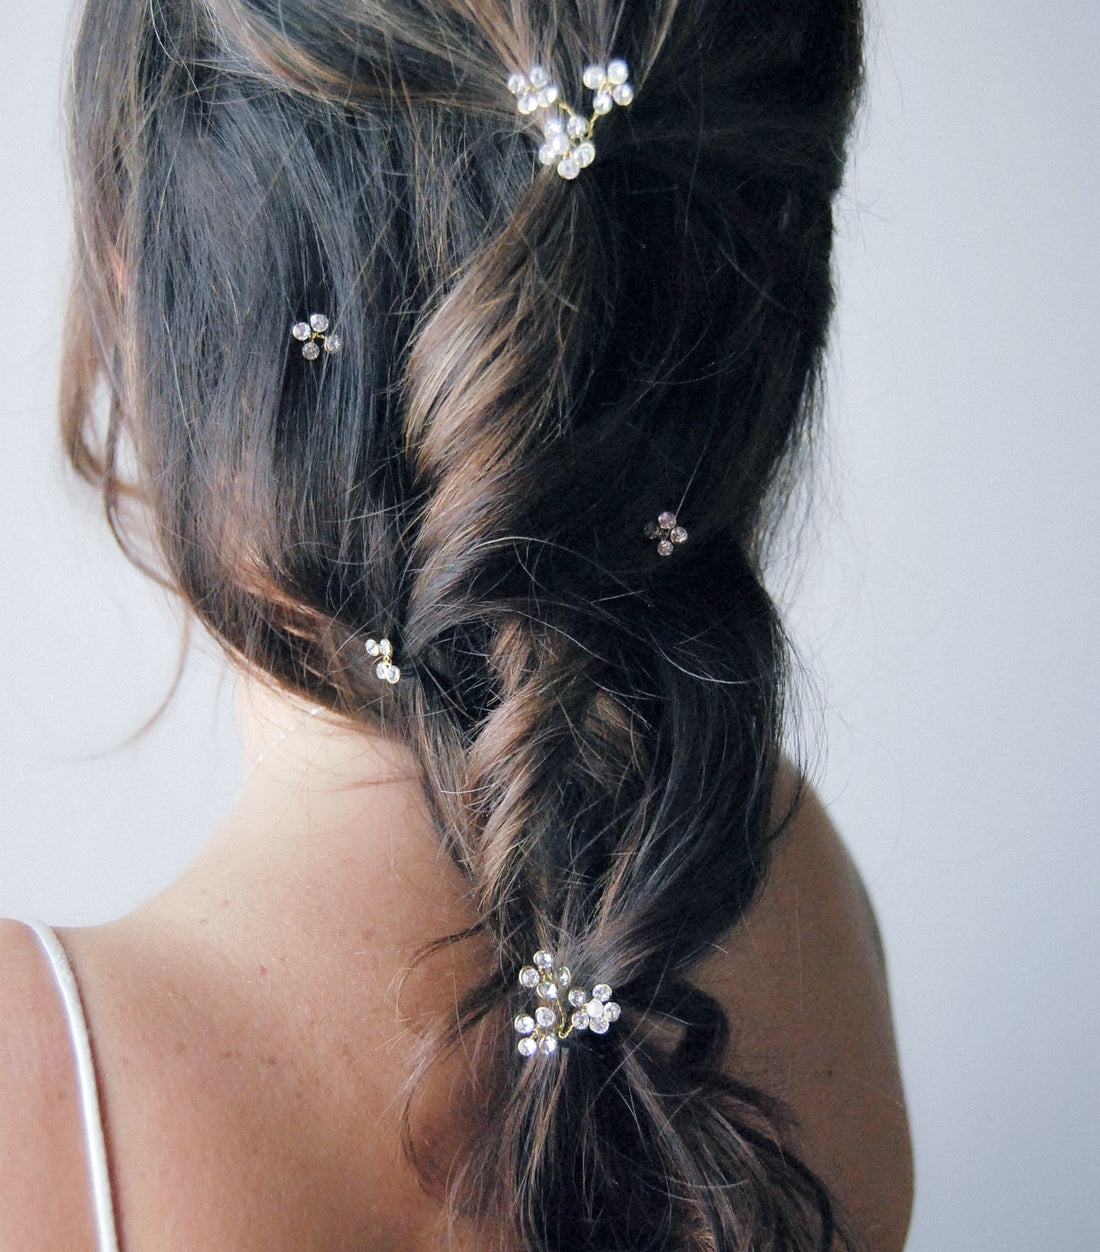 Crystal flower hair pins - Set 5